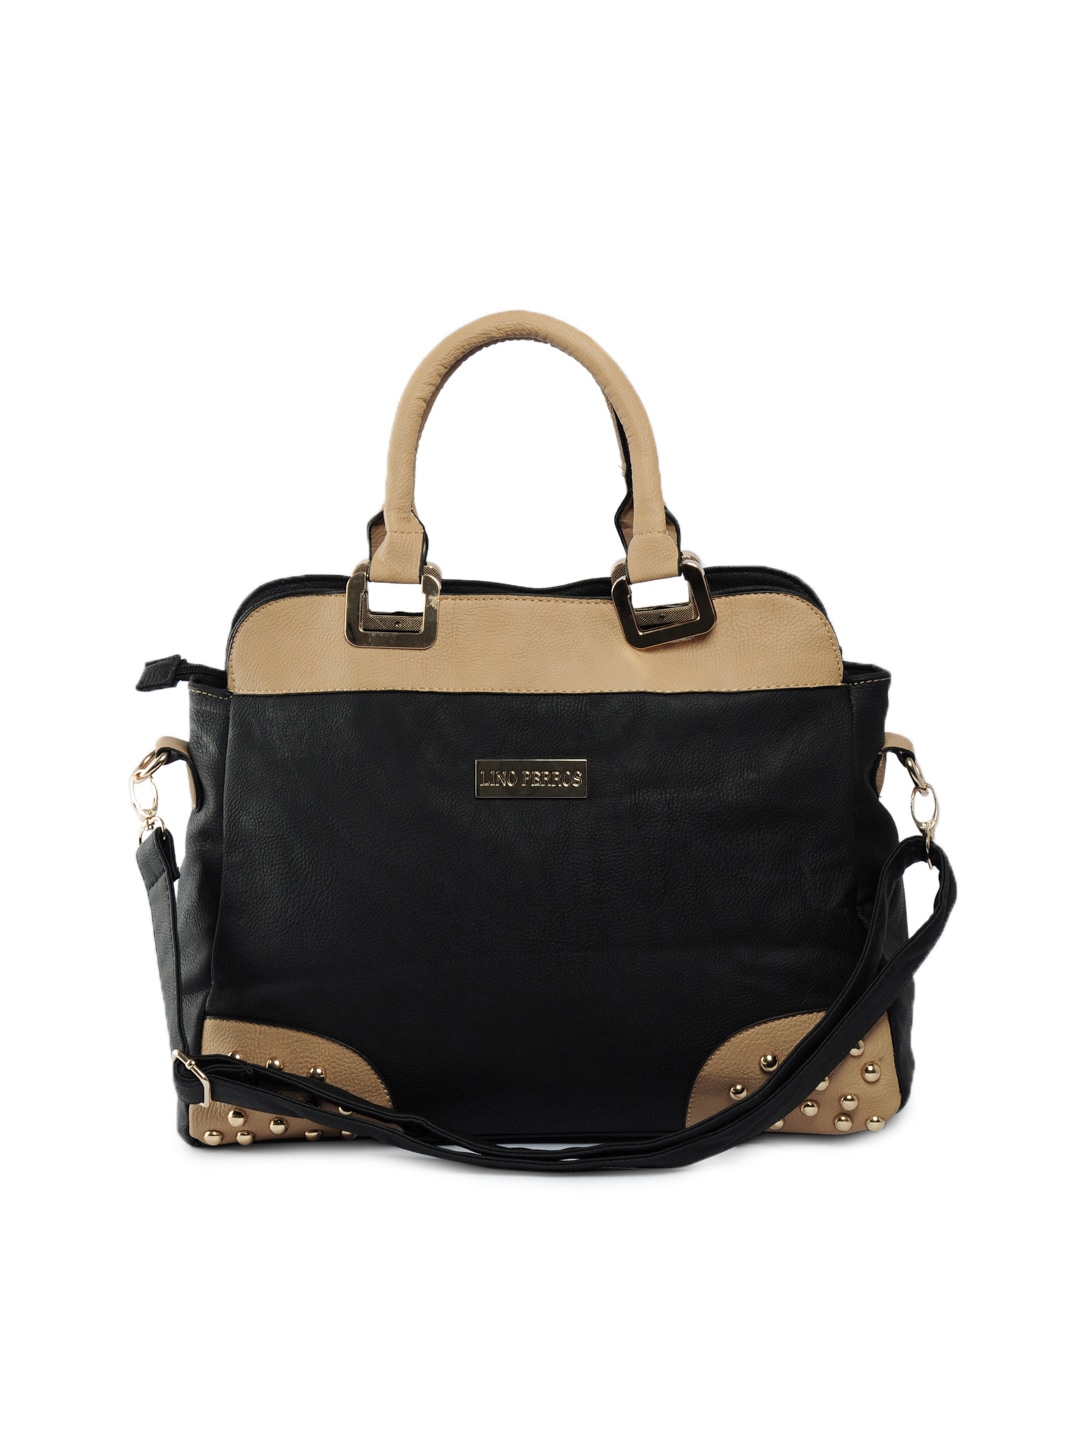 Lino Perros Women Leatherite Black Handbag